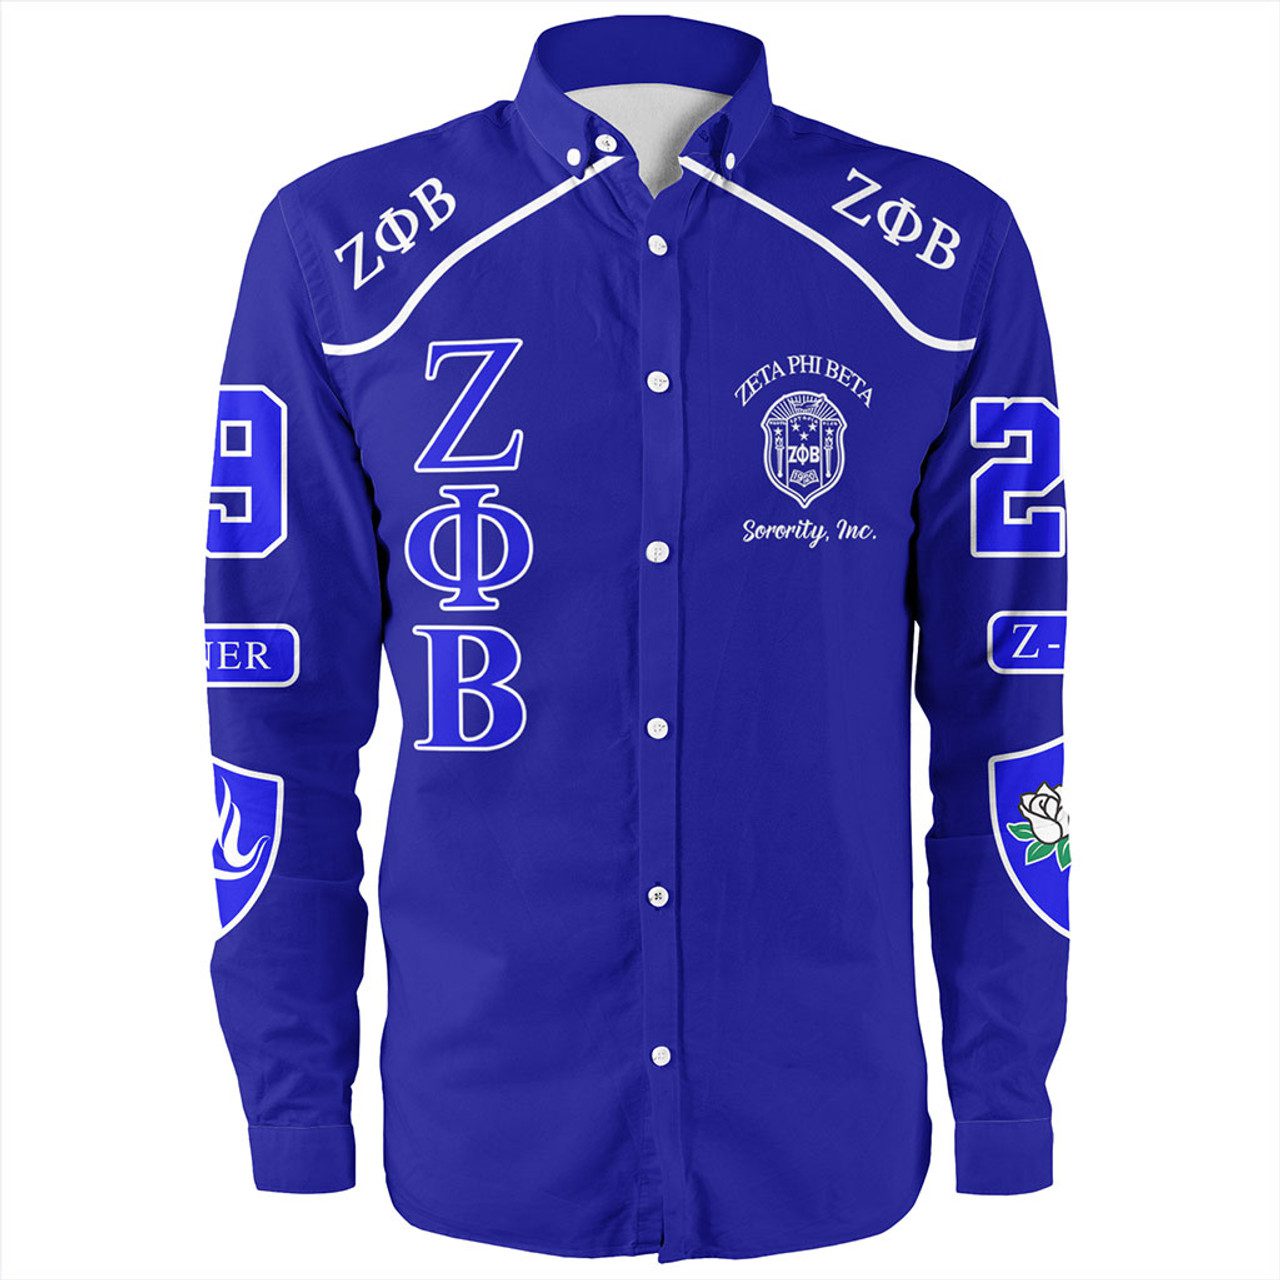 Zeta Phi Beta Long Sleeve Shirt Greek Sorority Style